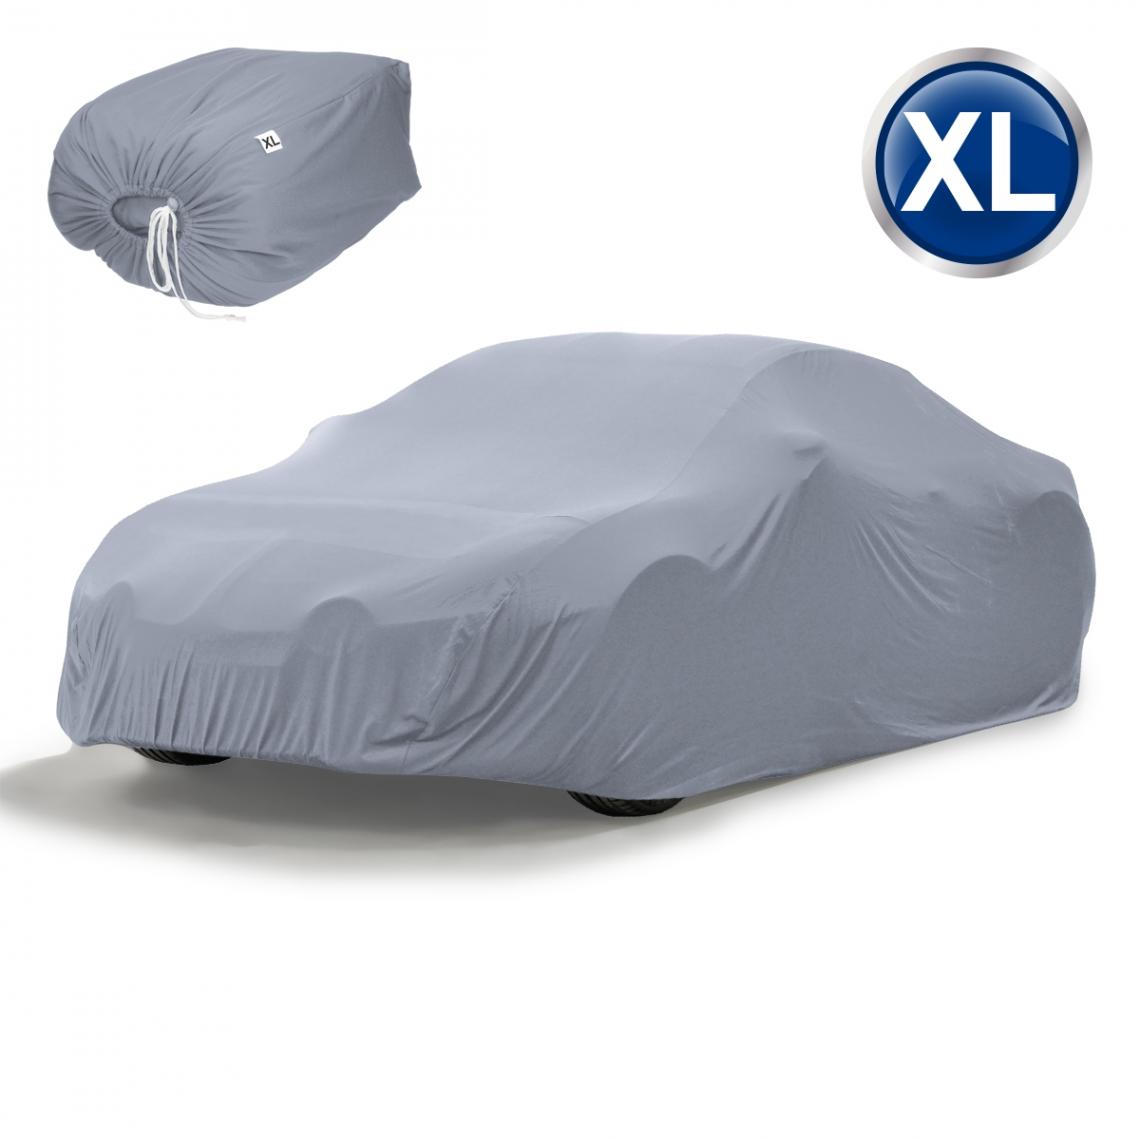 Ecd Germany - Housse de protection intérieur voiture couverture gris taille XL 533x178x119 cm - Accessoires Mobilité électrique